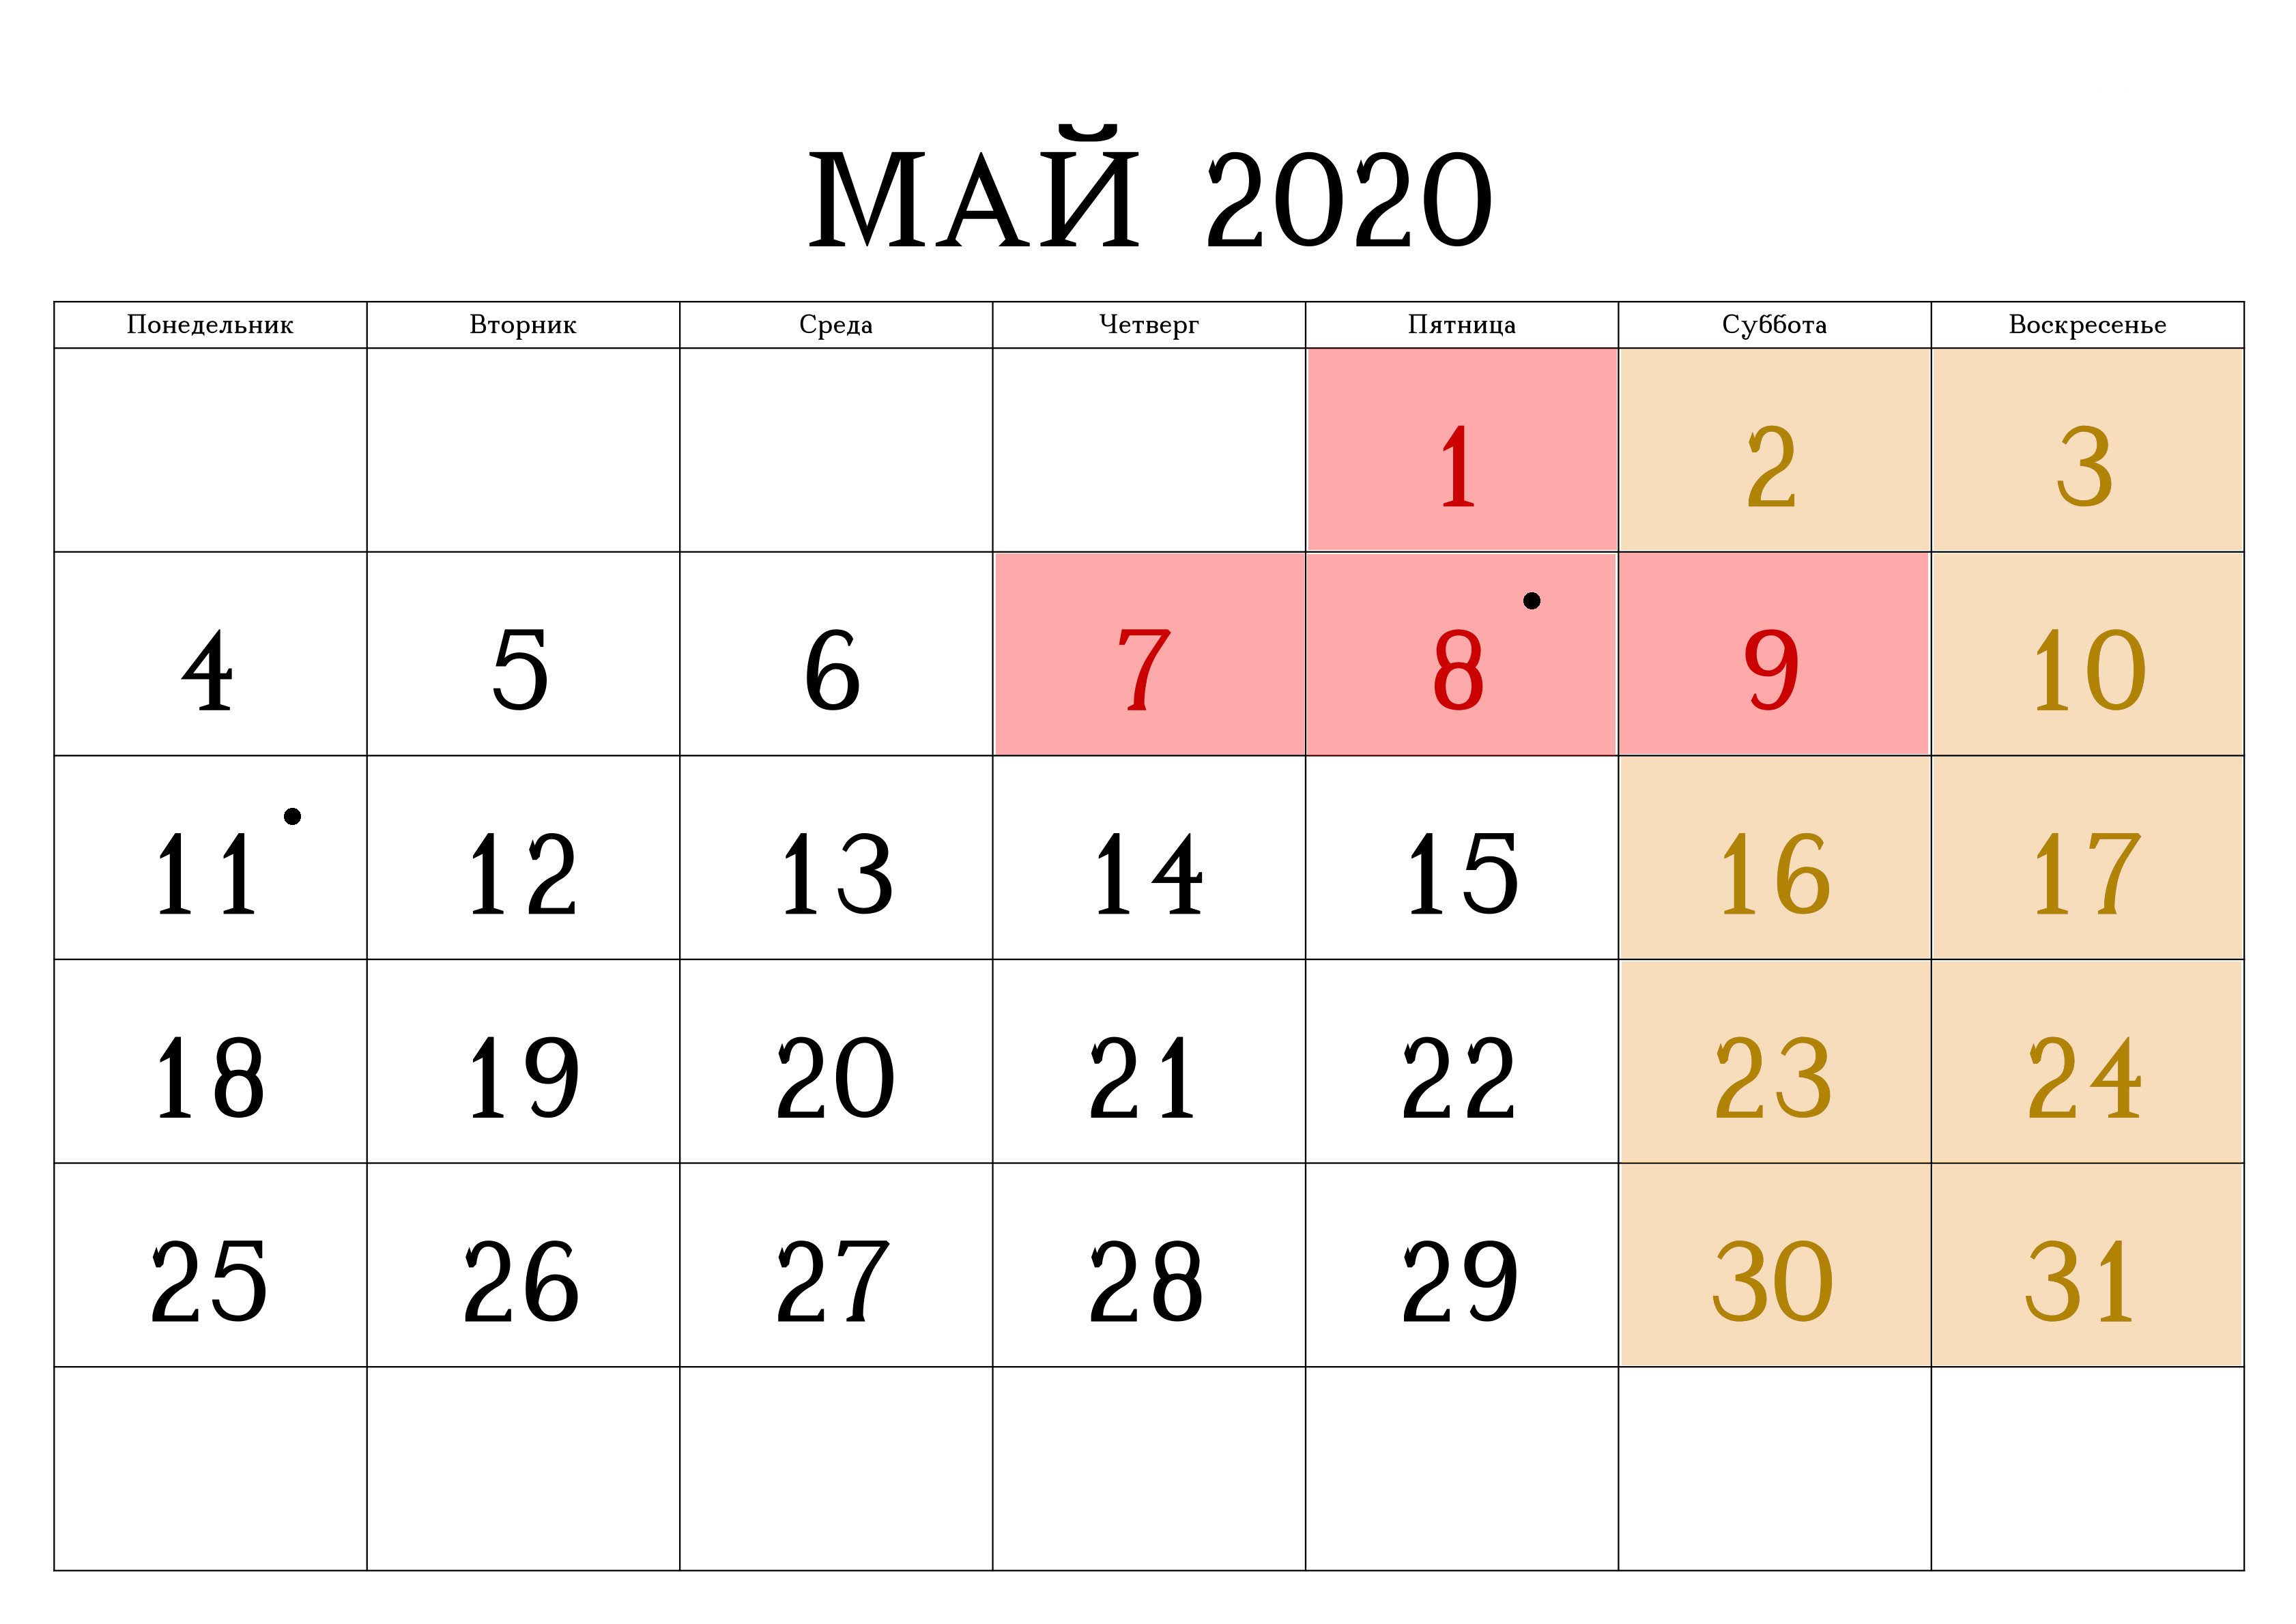 Изменения в мае 2020. Выходные май 2020. Выходные в мае. Май 2020 календарь. Отдых в мае 2020.